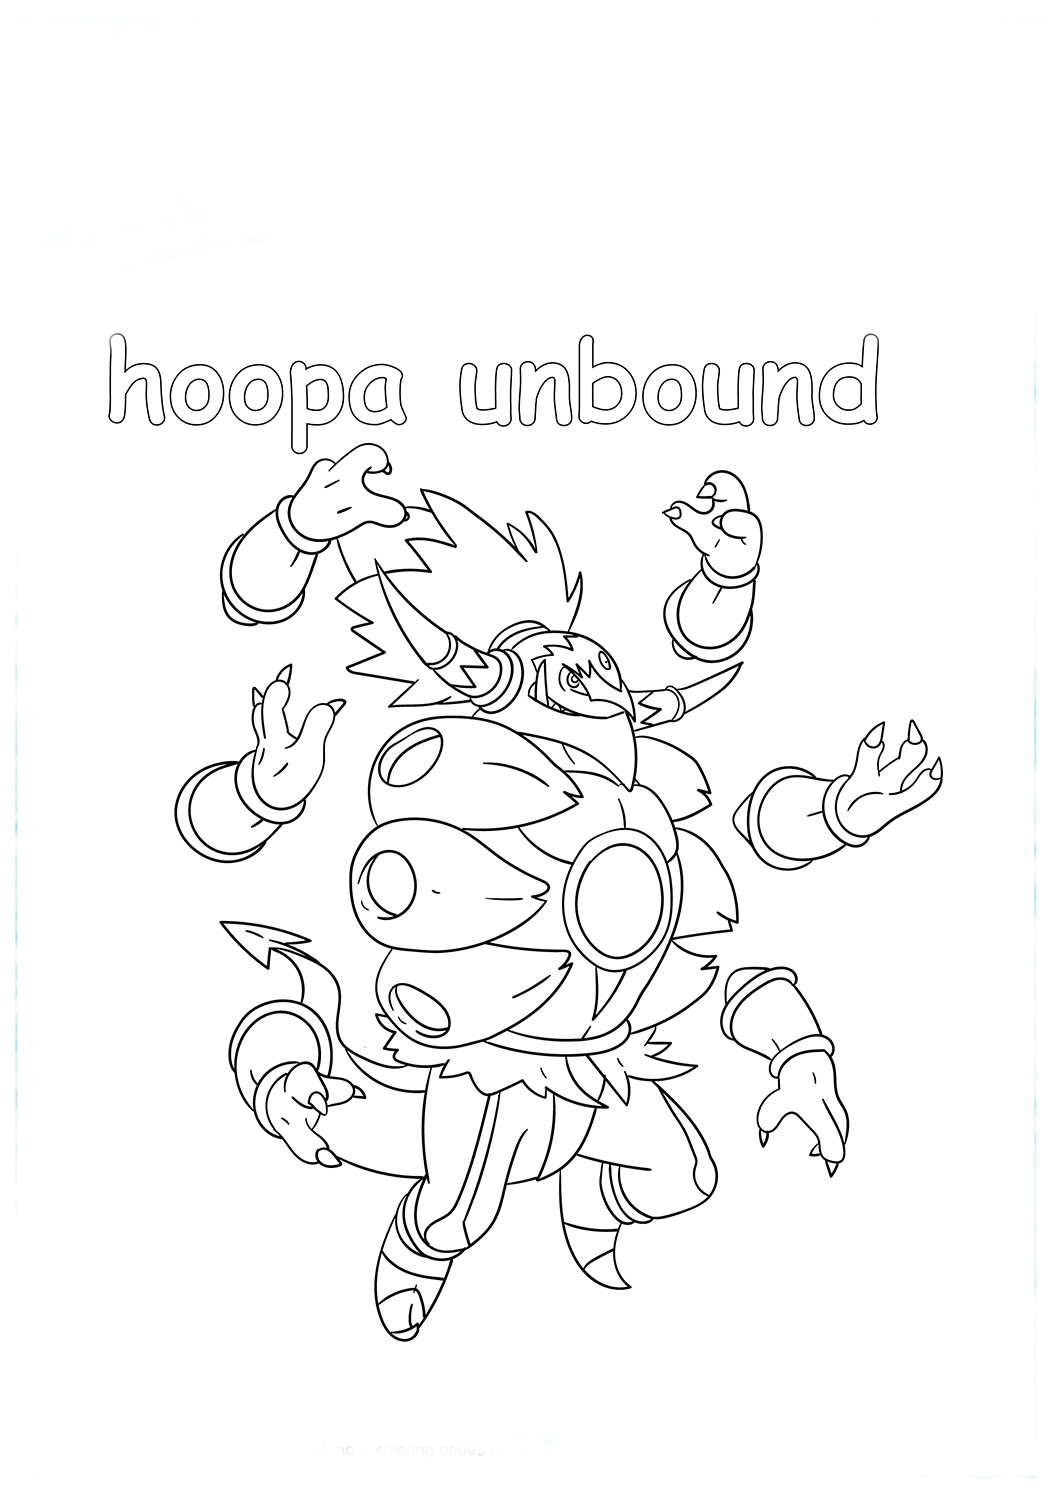 Hoopa Unbound